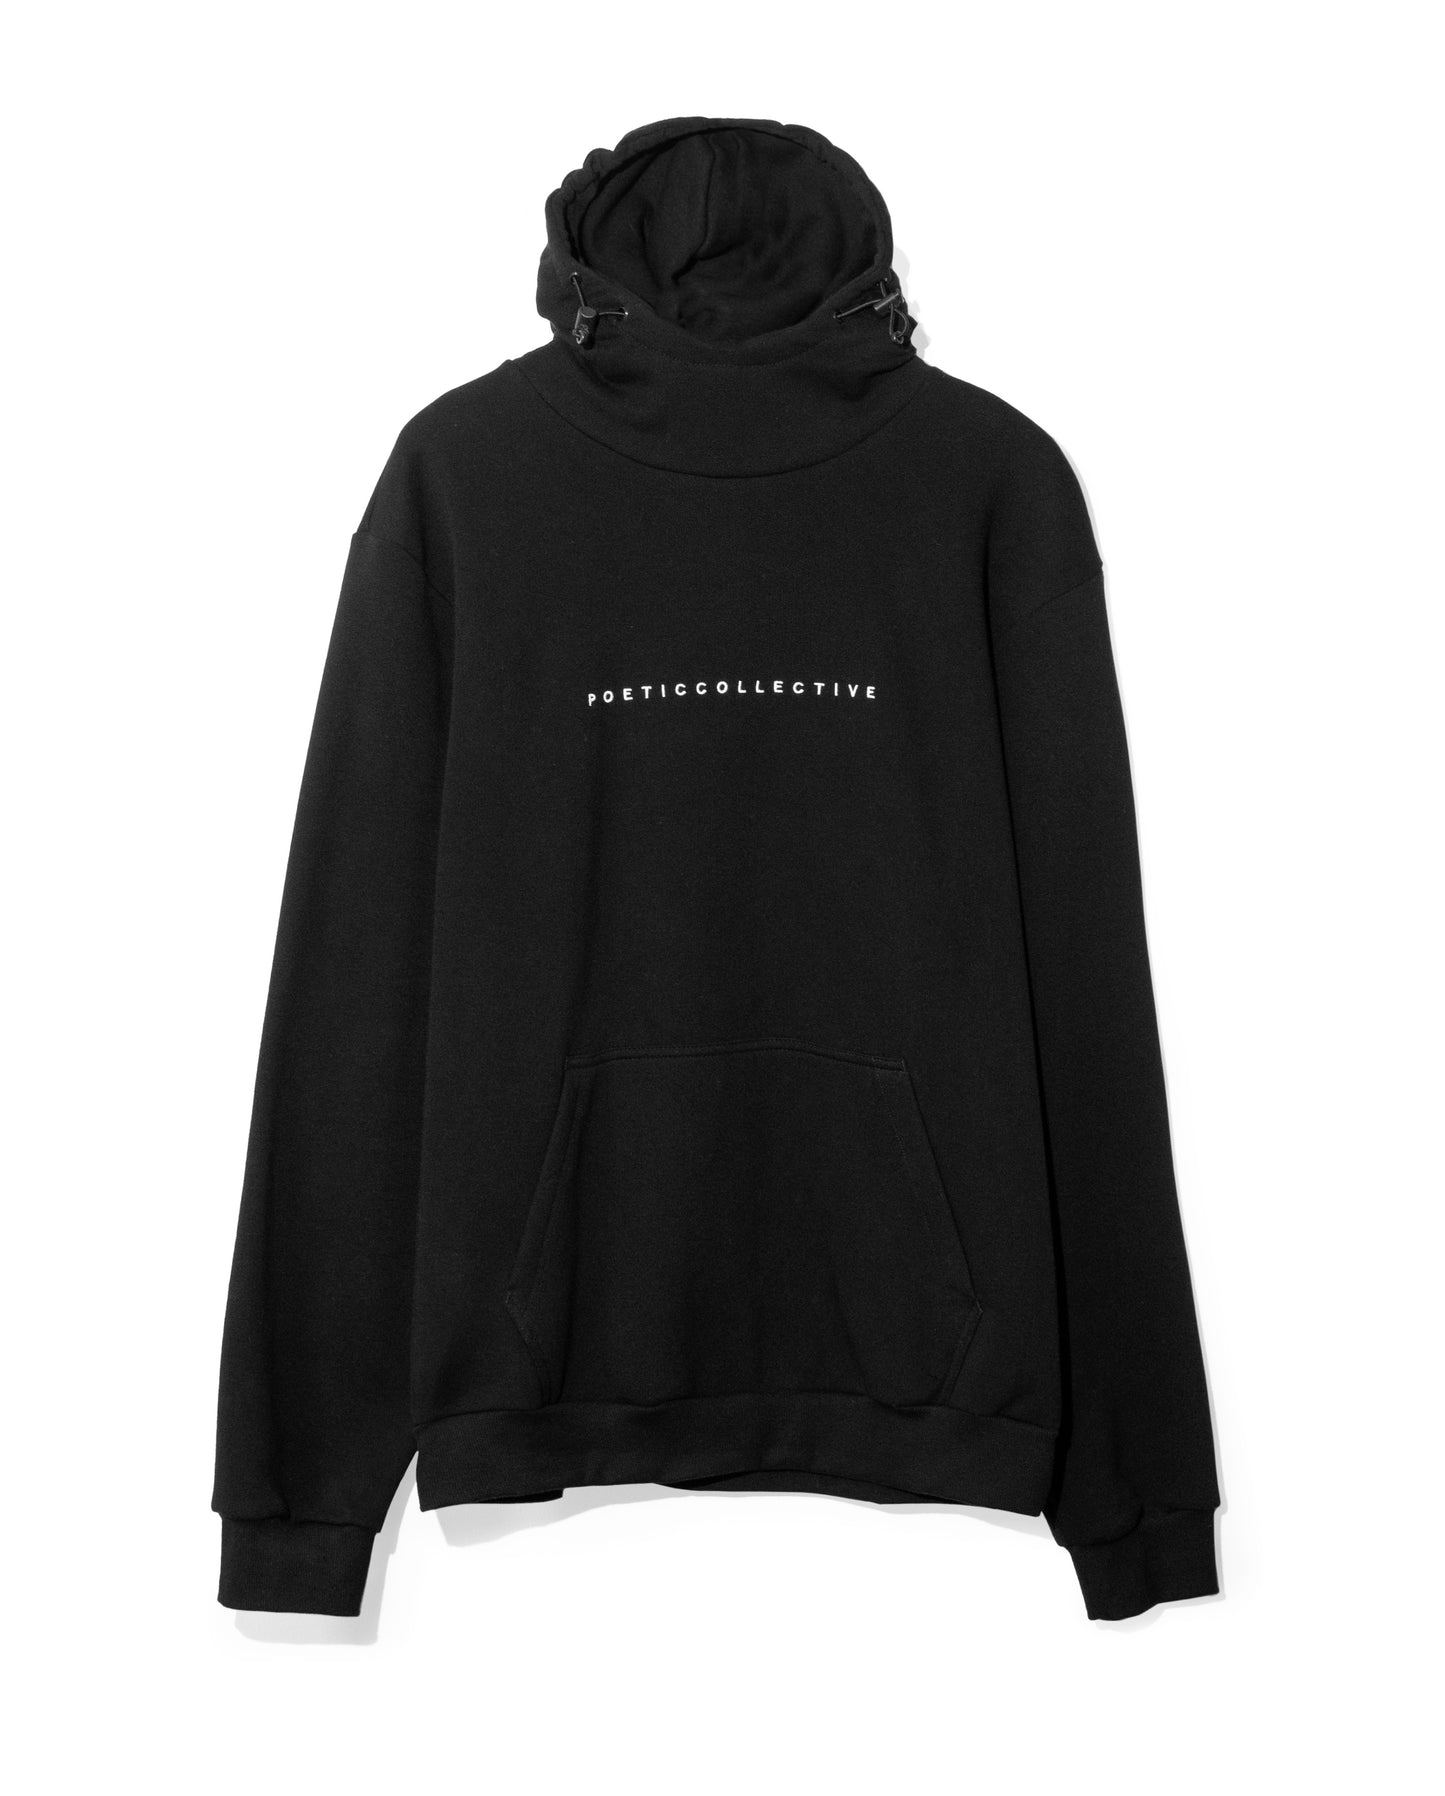 Ninja hoodie - black